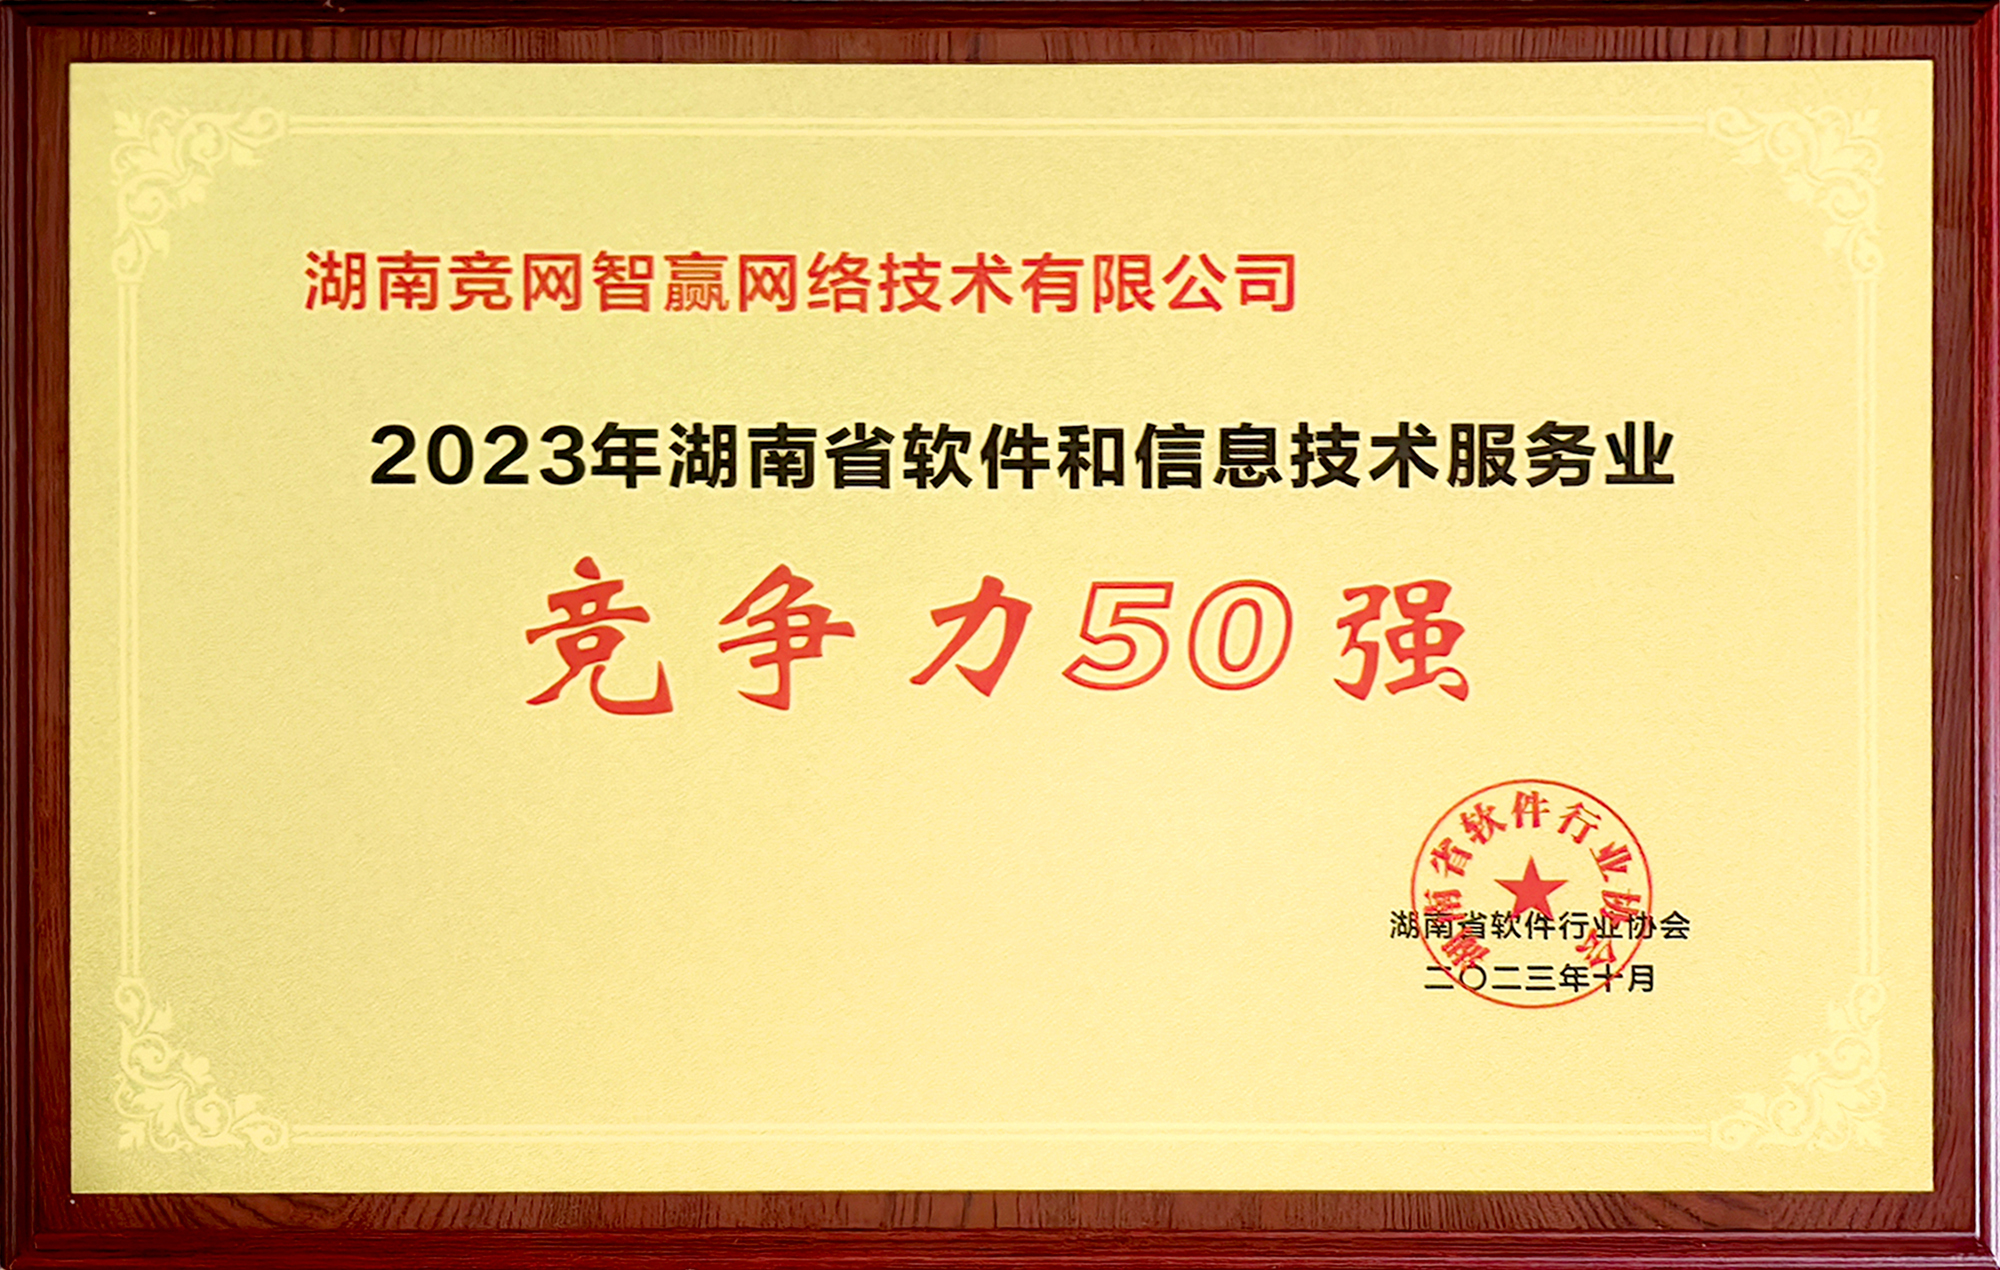 2023年湖南省軟件和信息技術服務業競爭力50強